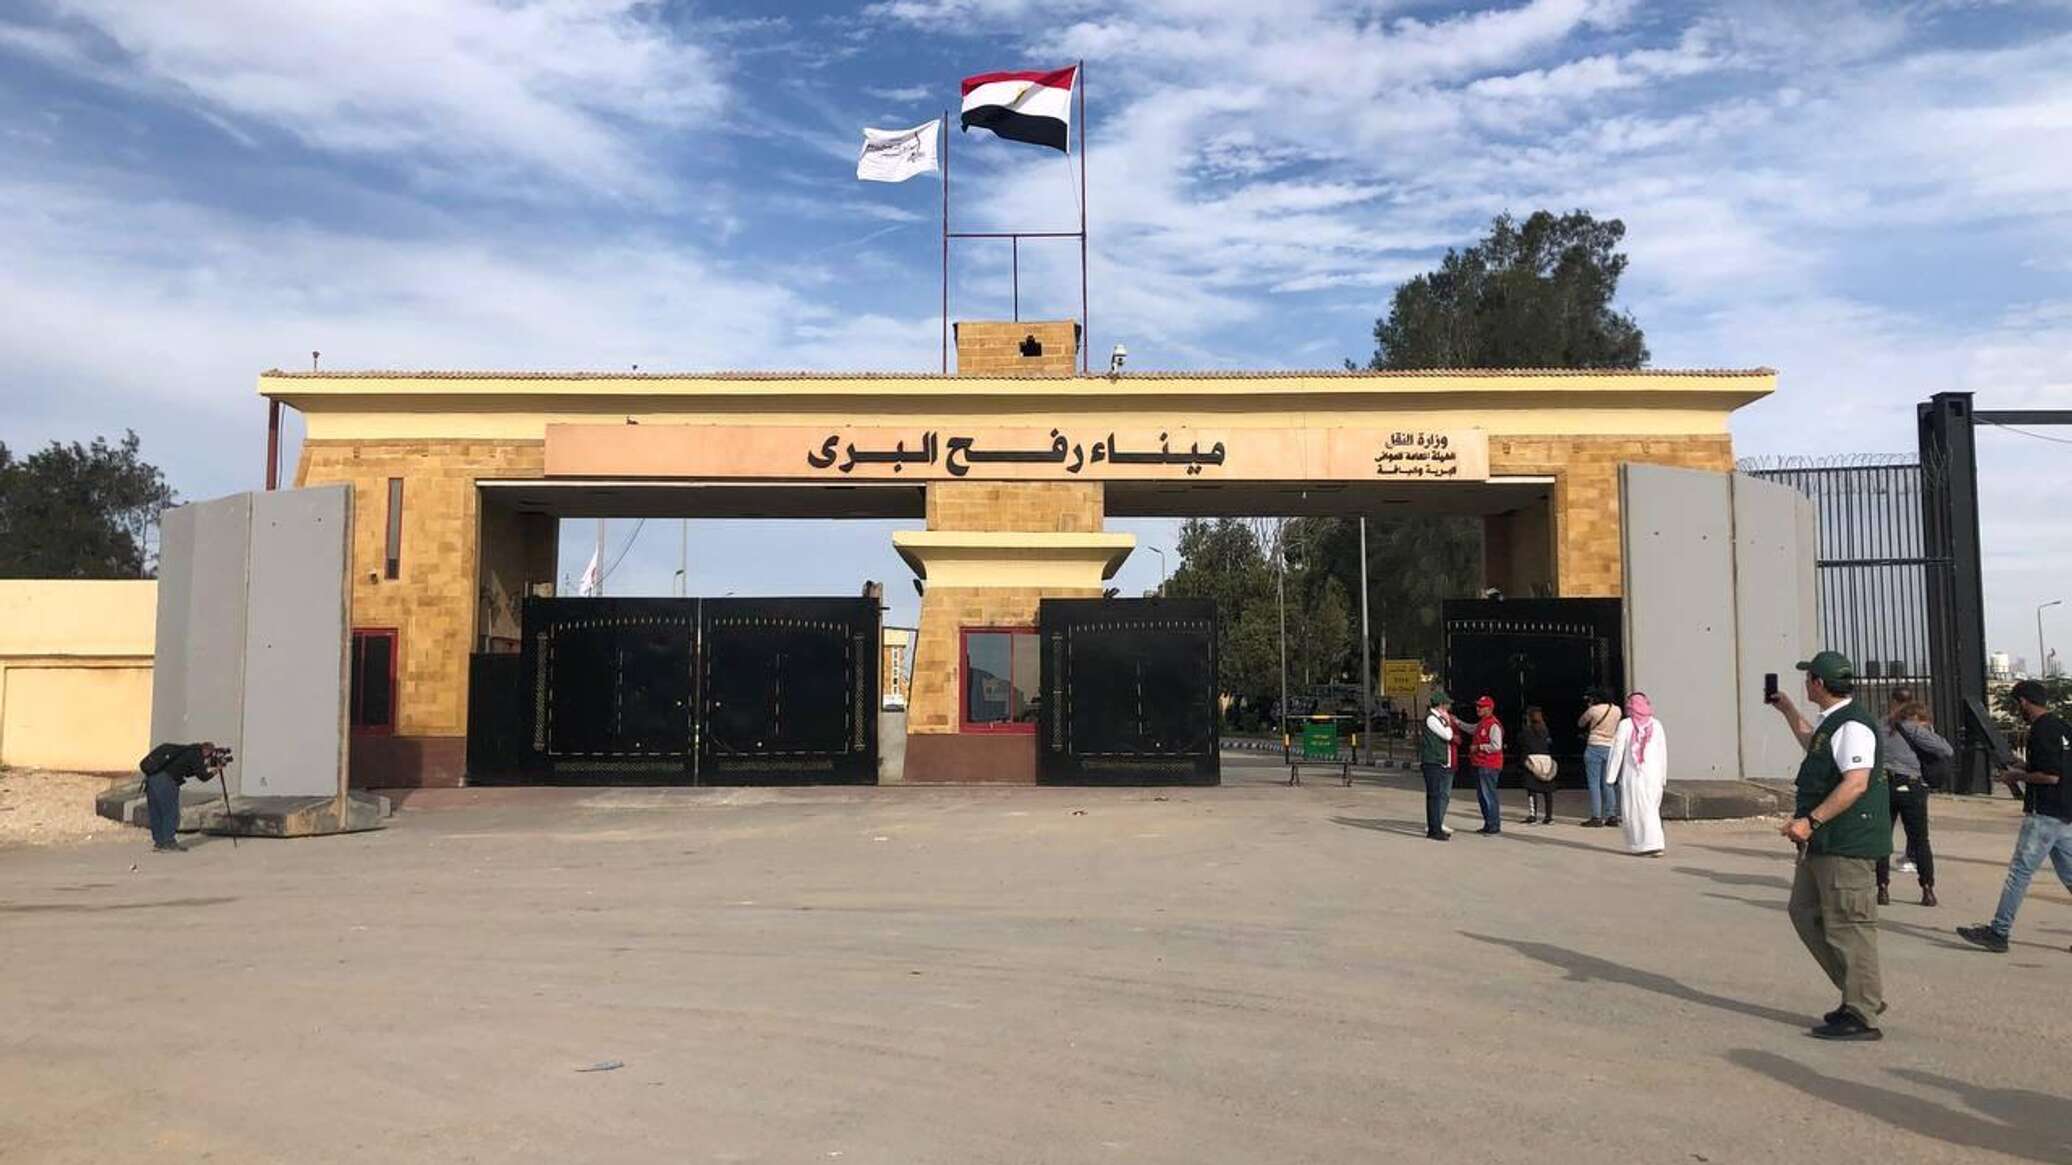 إعلام: إسرائيل تعرض على مصر إعادة فتح معبر رفح بمشاركة ممثلين فلسطينيين وأمميين